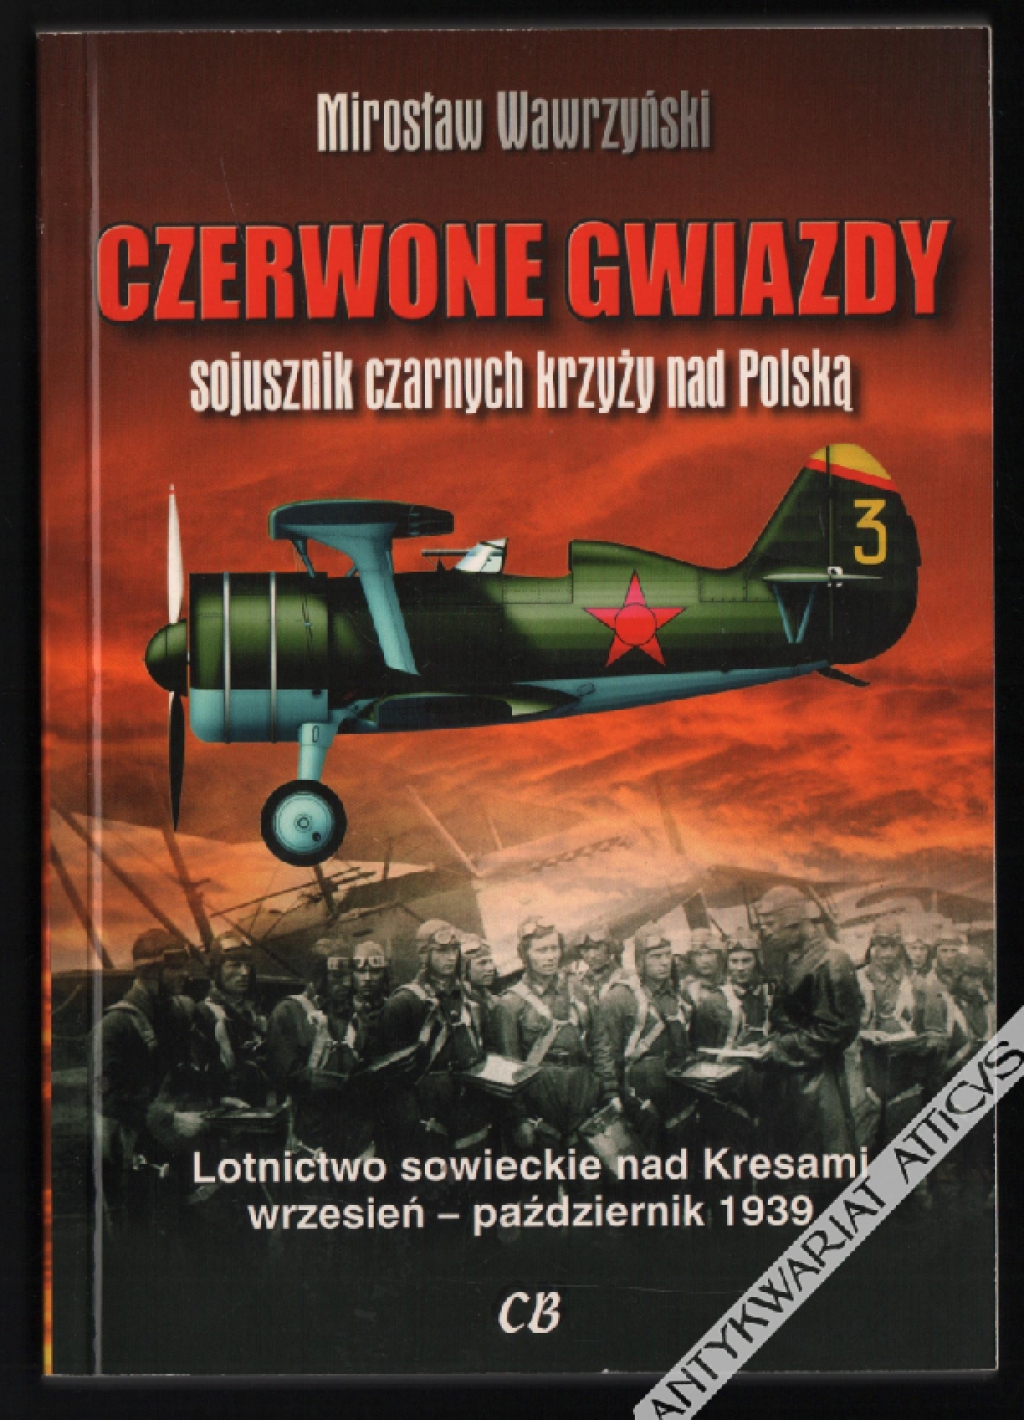 Czerwone gwiazdy - sojusznik czarnych krzyży nad Polską. Lotnictwo sowieckie nad Kresami wrzesień - październik 1939